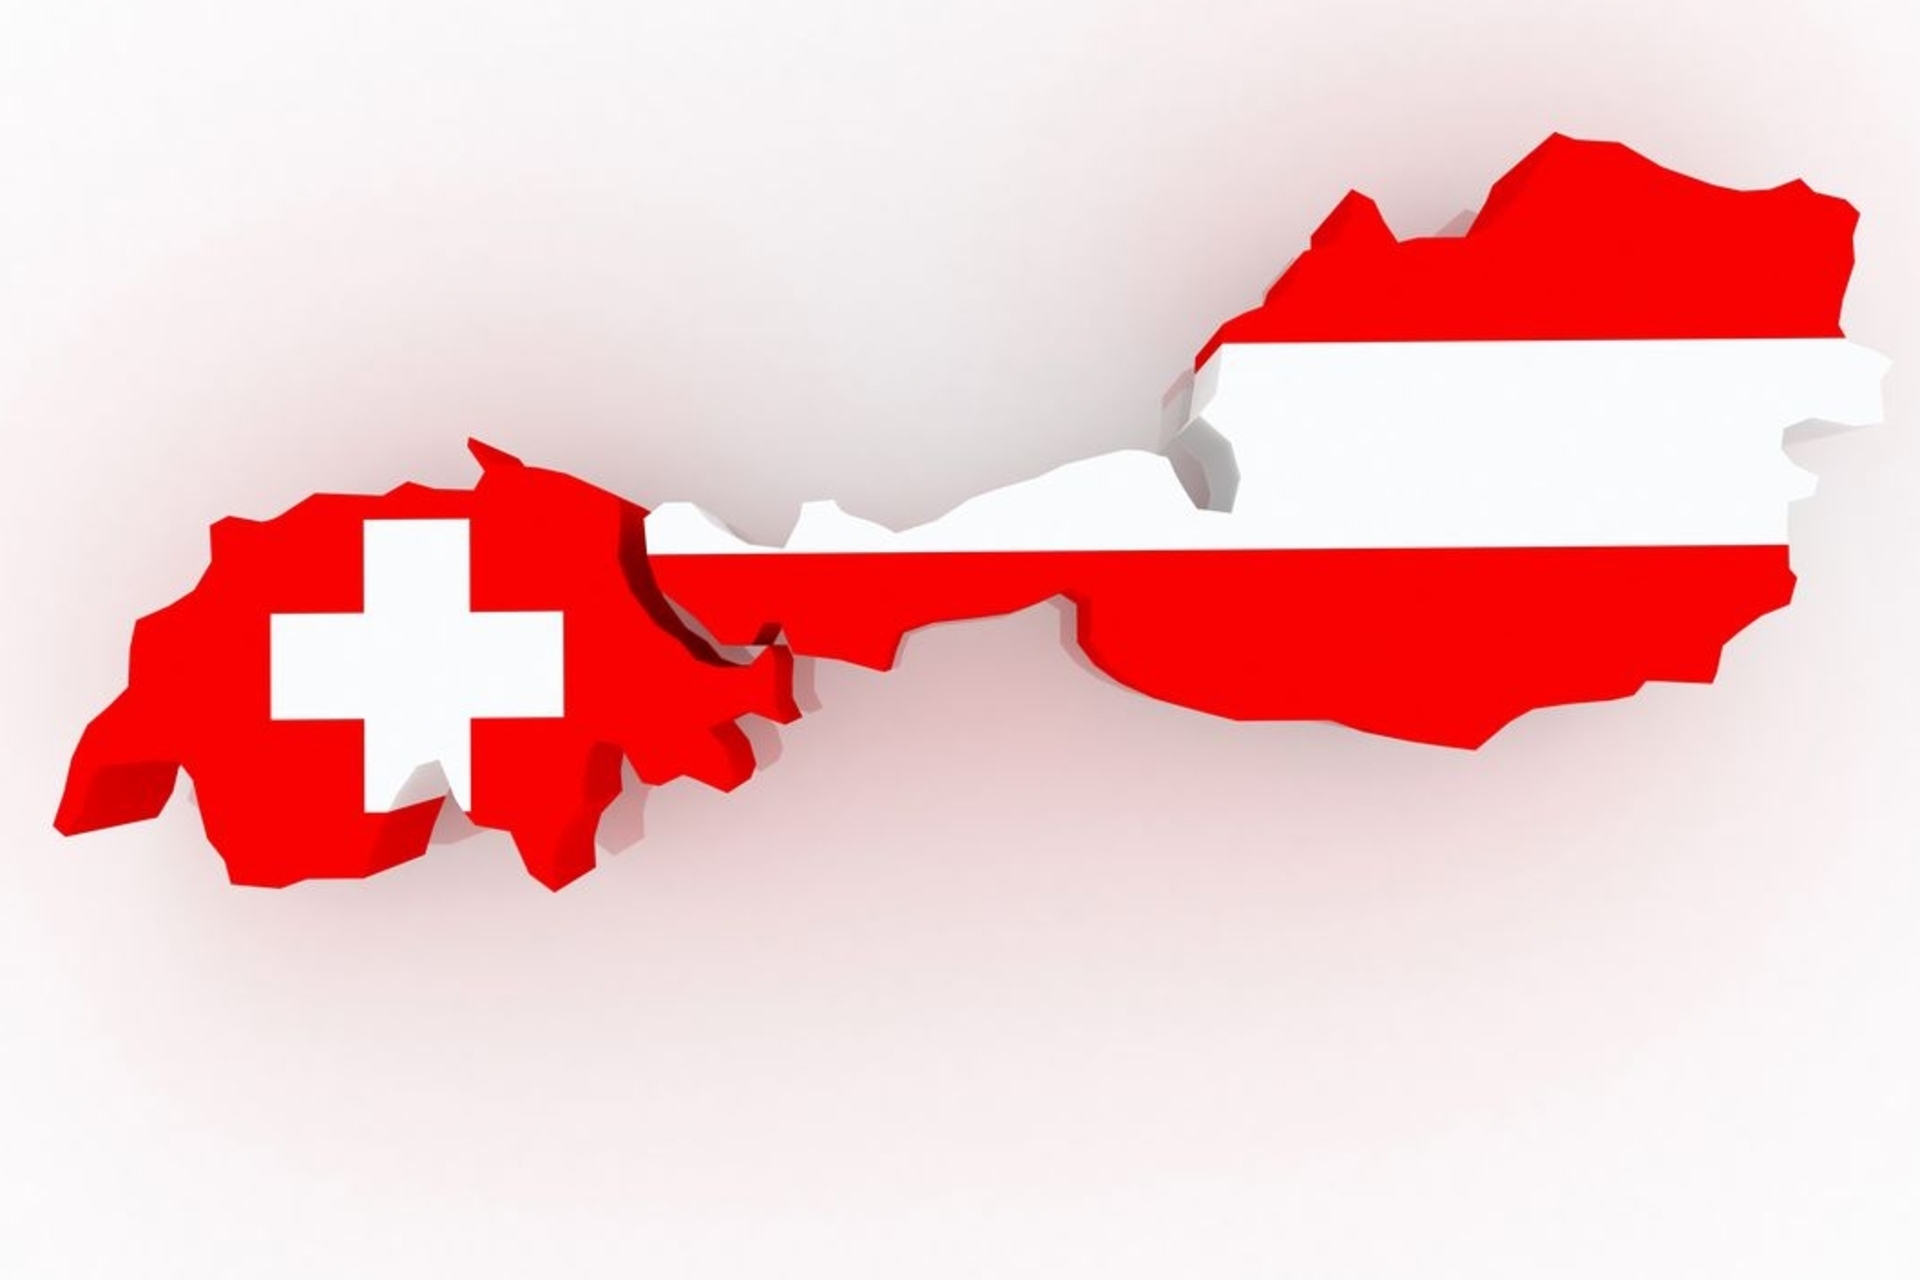 Les frontières et les drapeaux de la Suisse et de l'Autriche